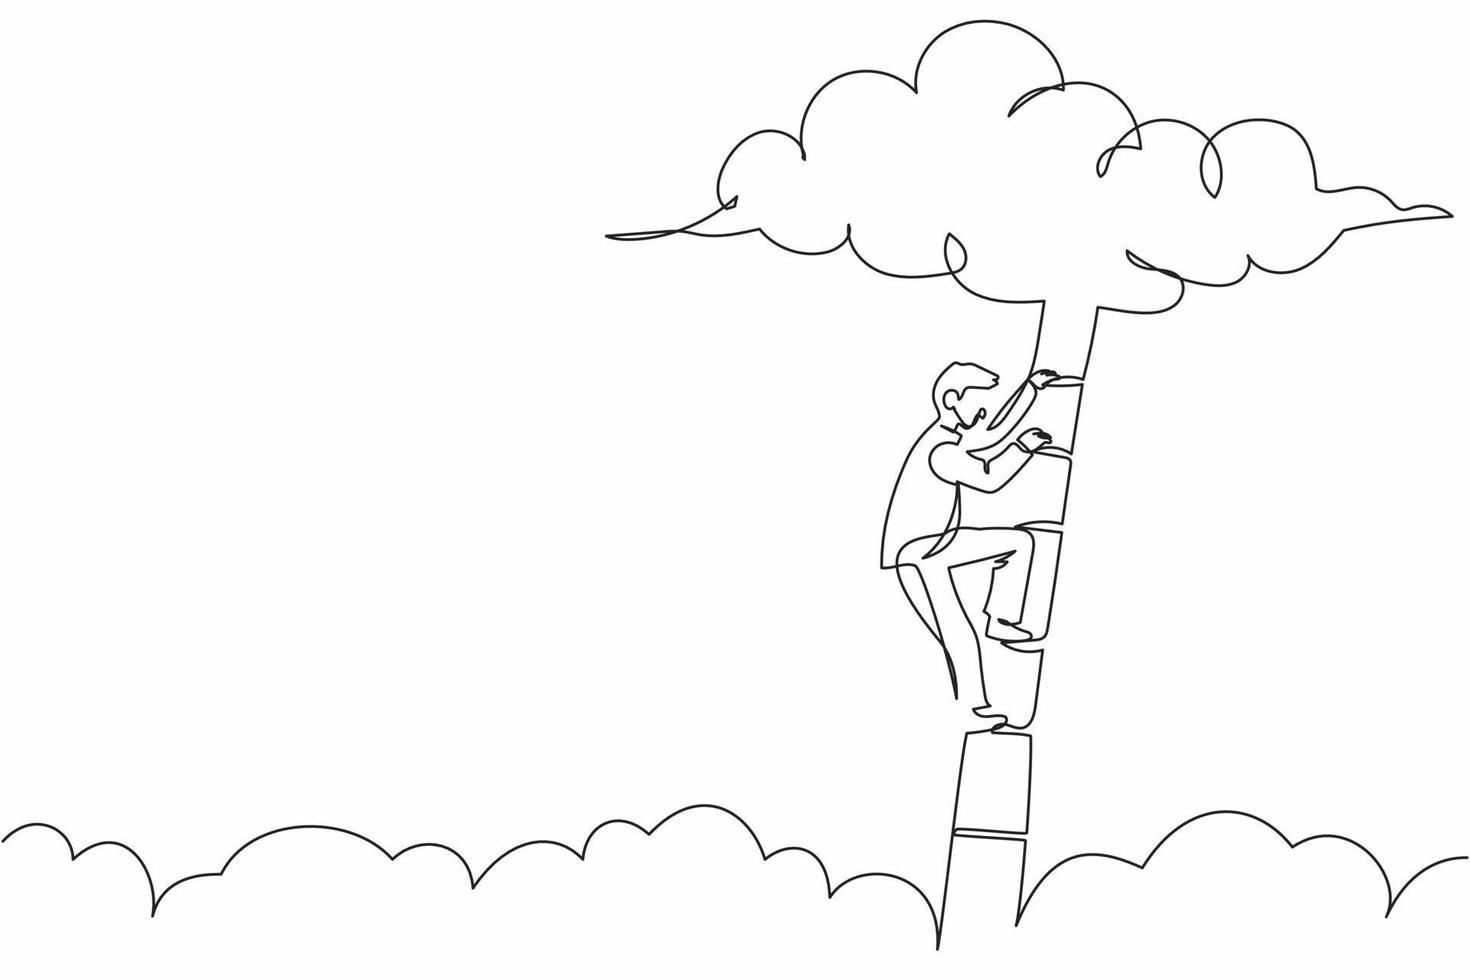 enda kontinuerlig linjeritning affärsman klättrar uppför stegen till molnet. framgångsrik chef stigande affärsutveckling. professionell tillväxtfrämjande. en rad rita grafisk design vektorillustration vektor